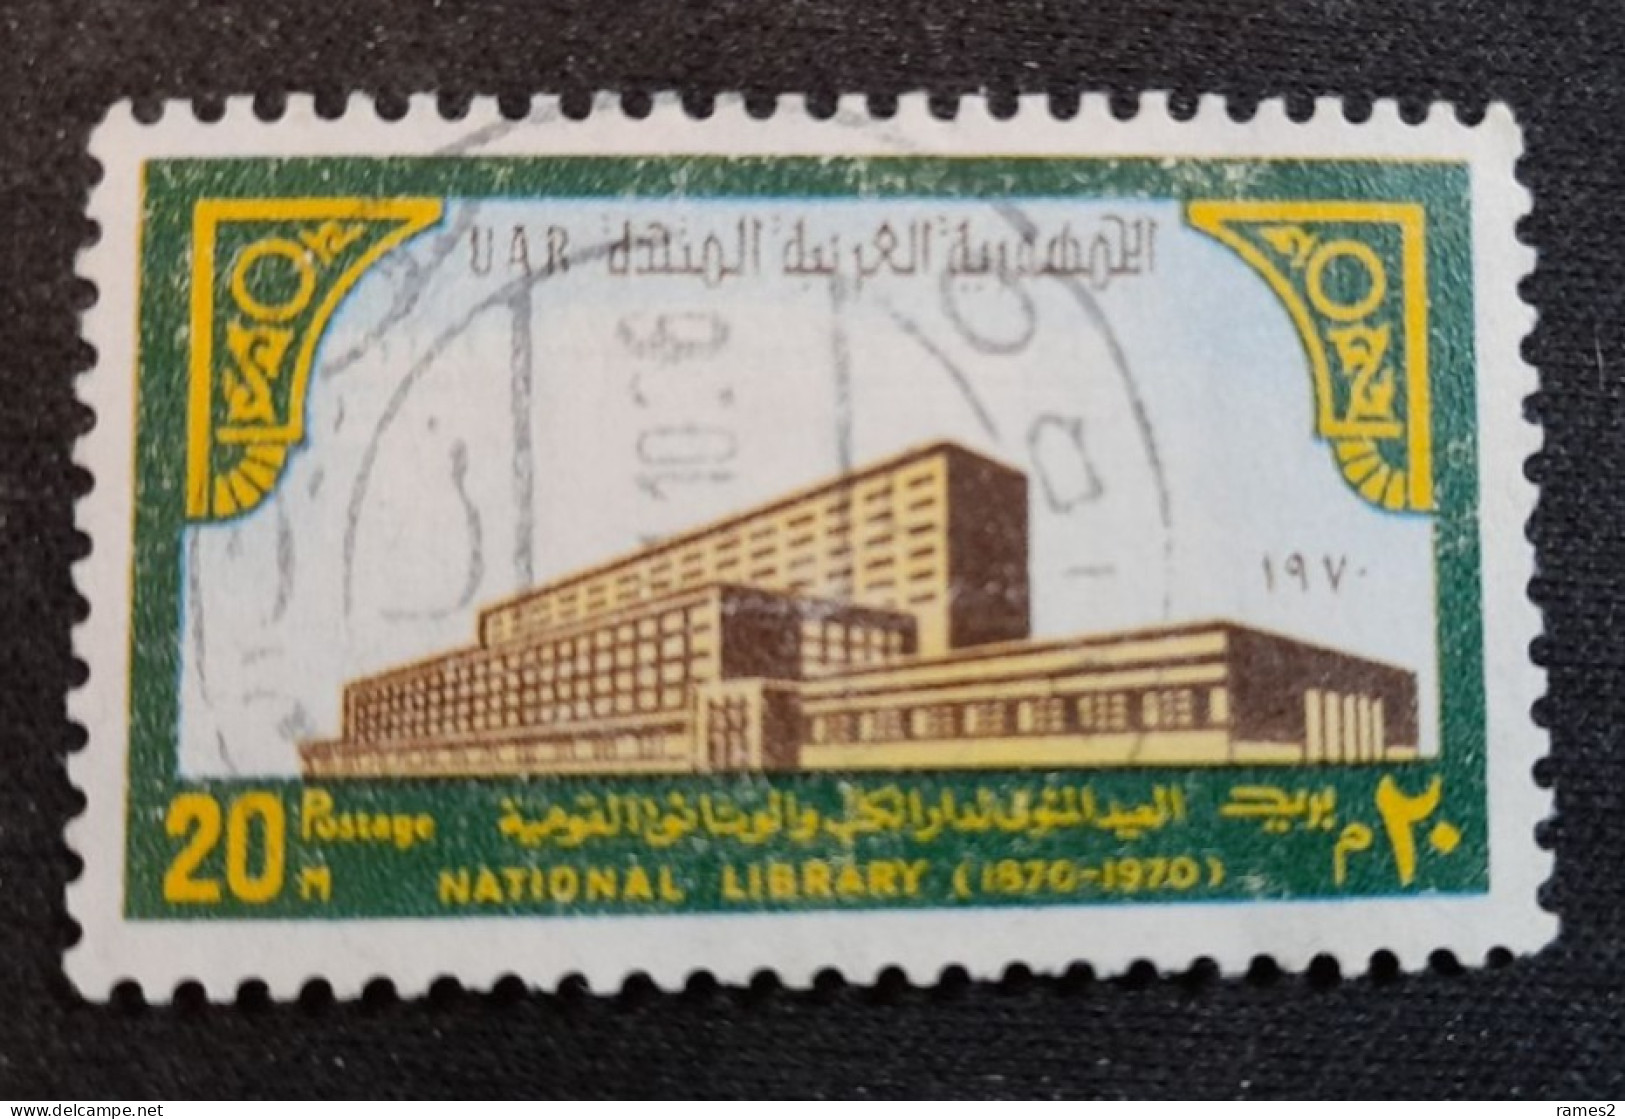 Egypte > 1953-... République > 1960-69 > Oblitérés N° 840 - Oblitérés